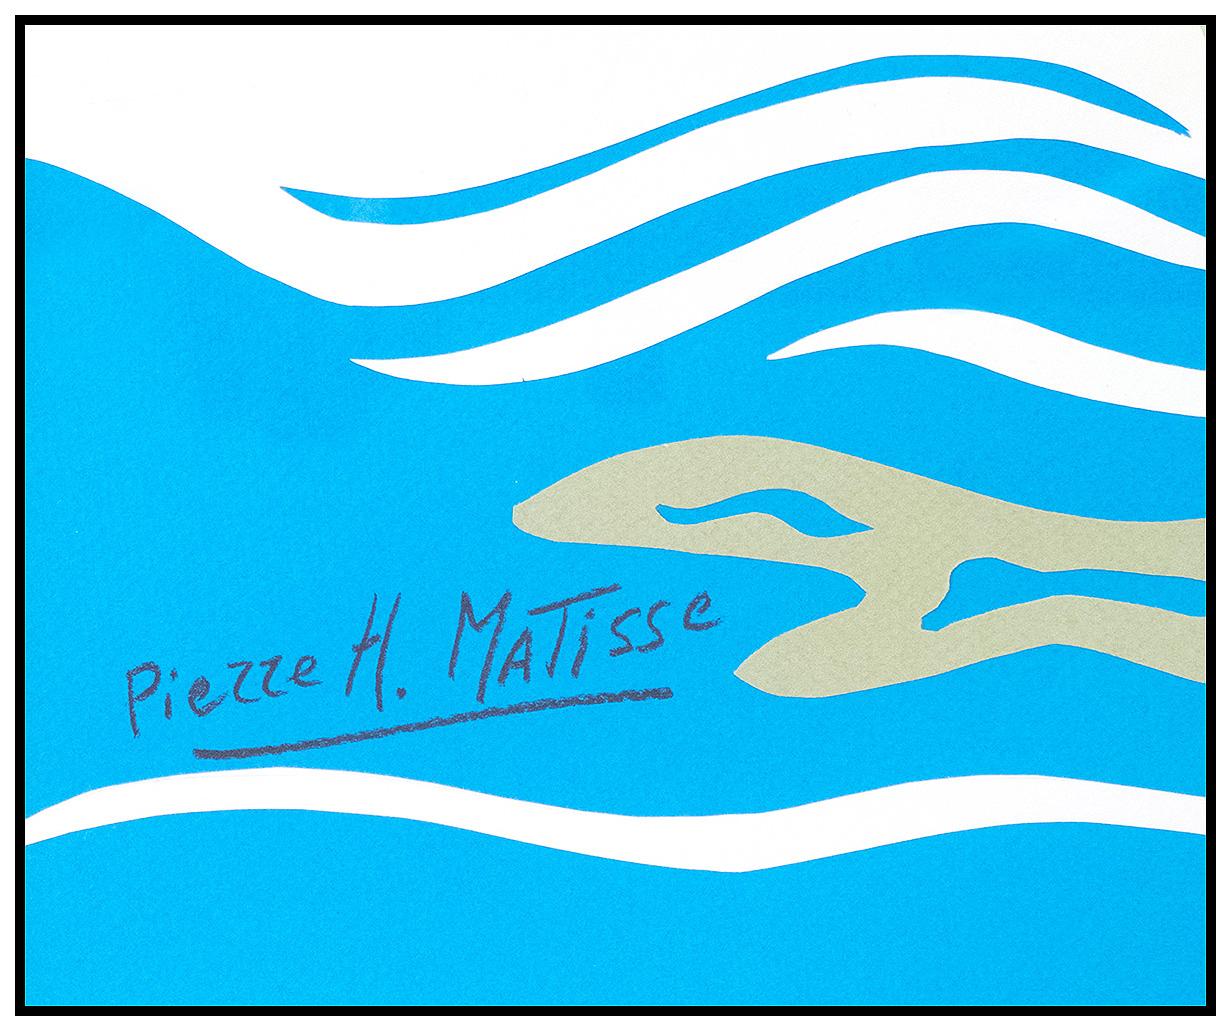 Pierre Henri Matisse Hand Cut Paper Collage Signed Modern Large Framed Artwork For Sale 1